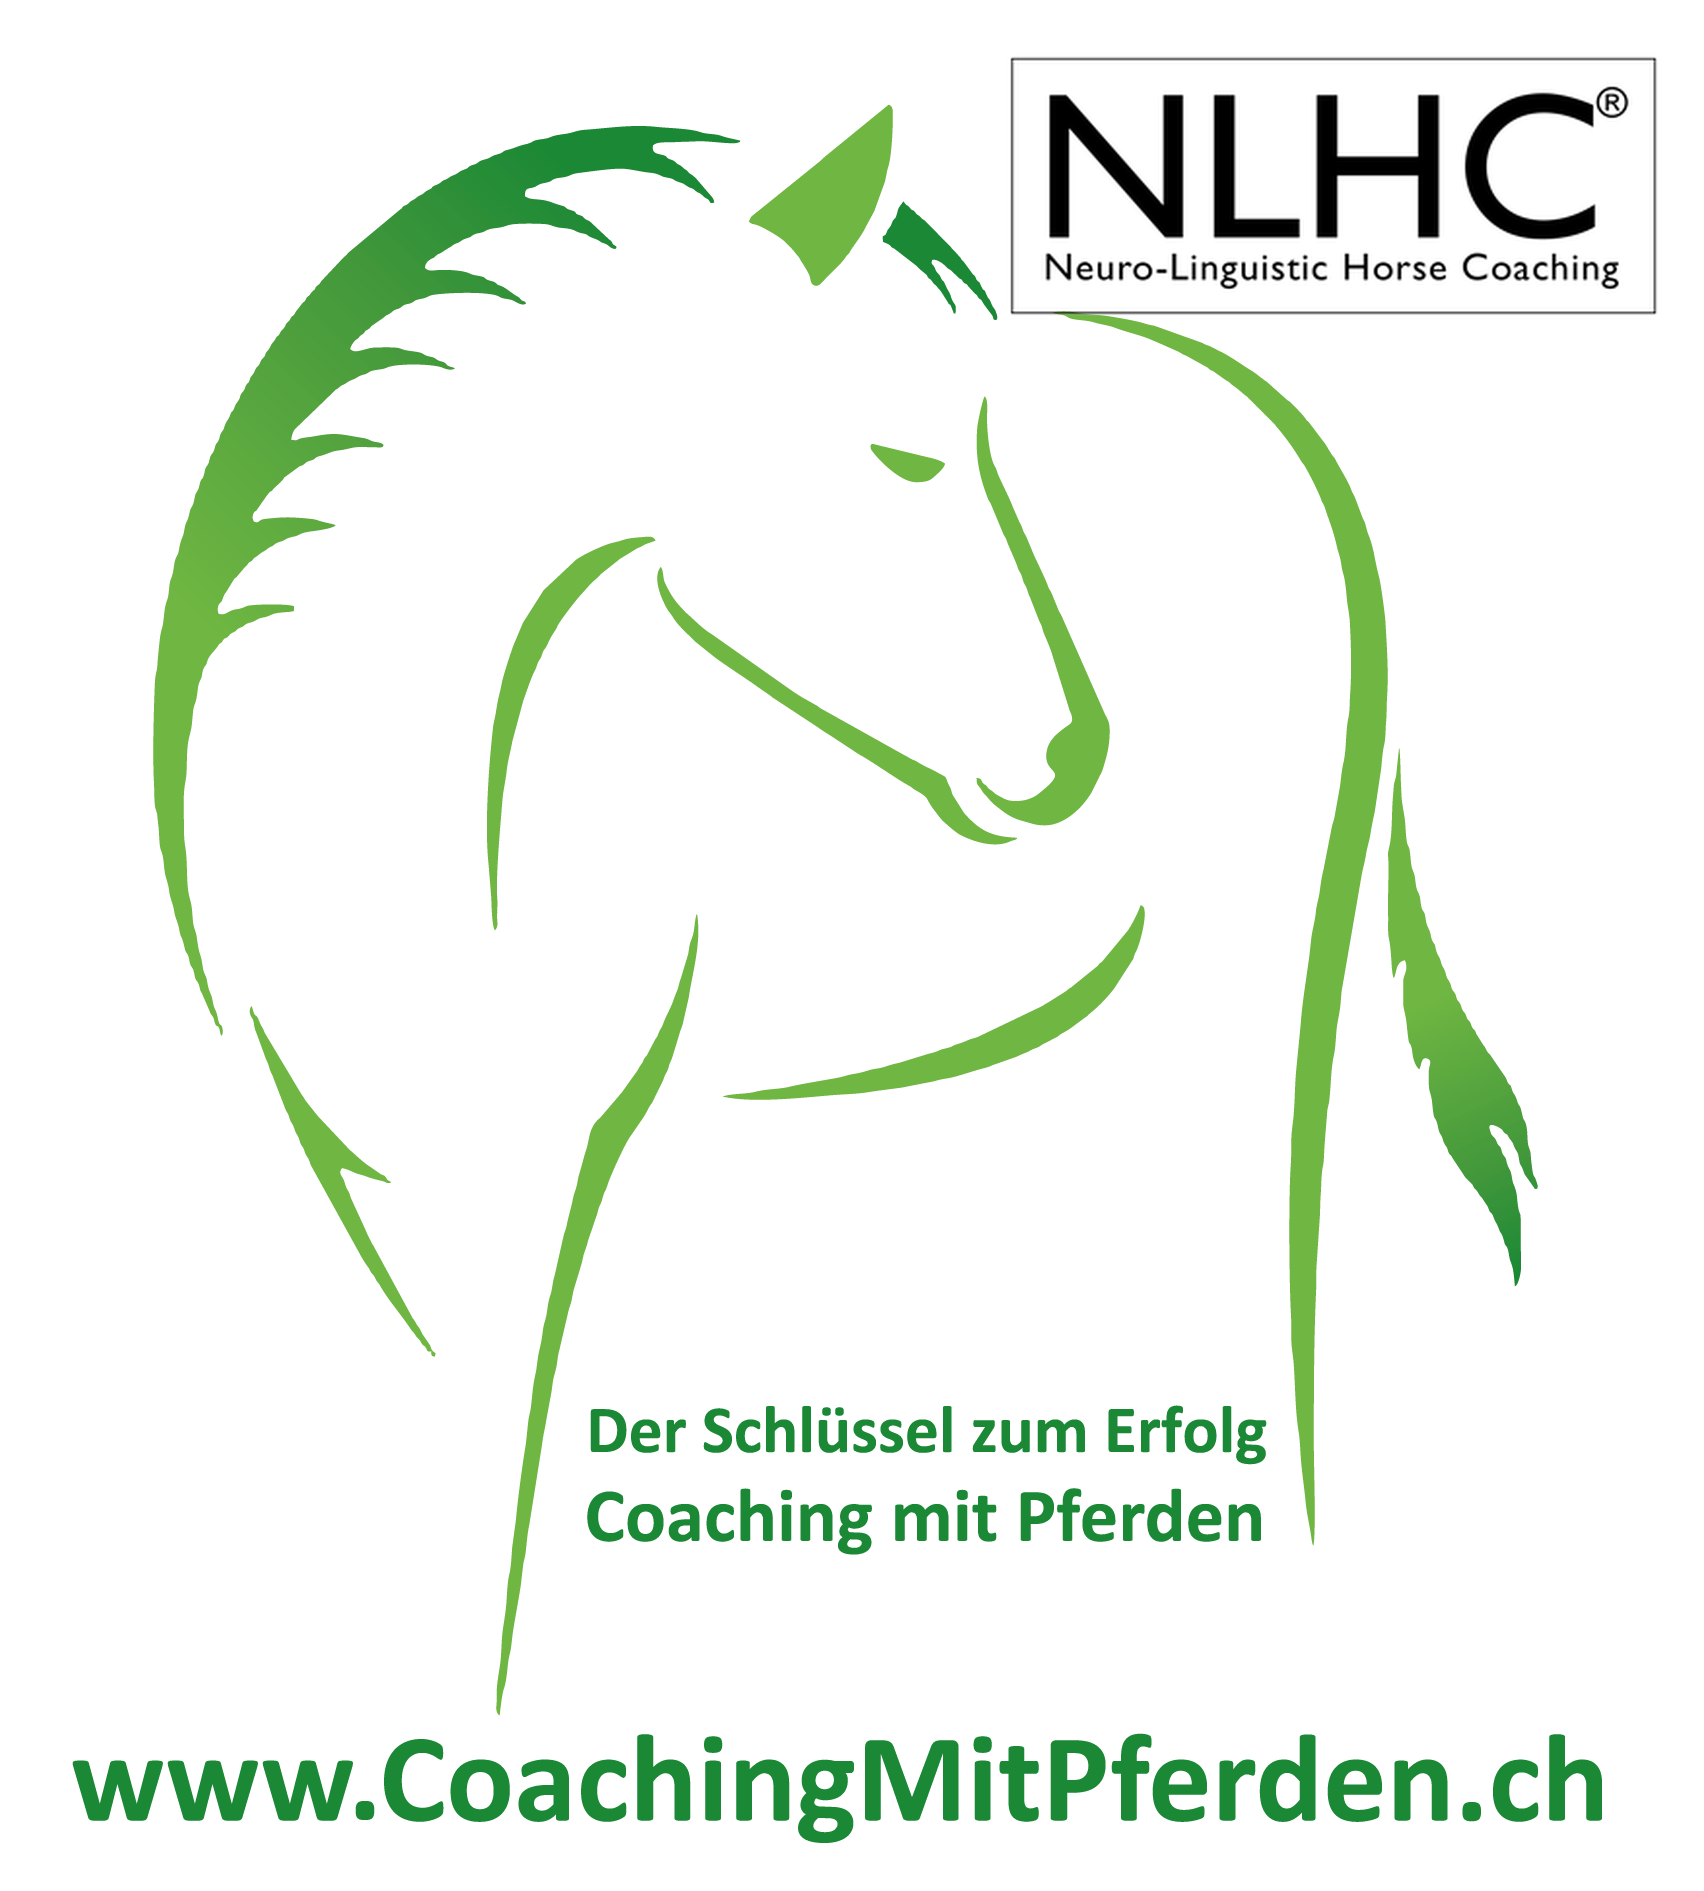 NLHC - Coaching mit Pferden, pferdegestütztes Coaching - Trainerausbildung